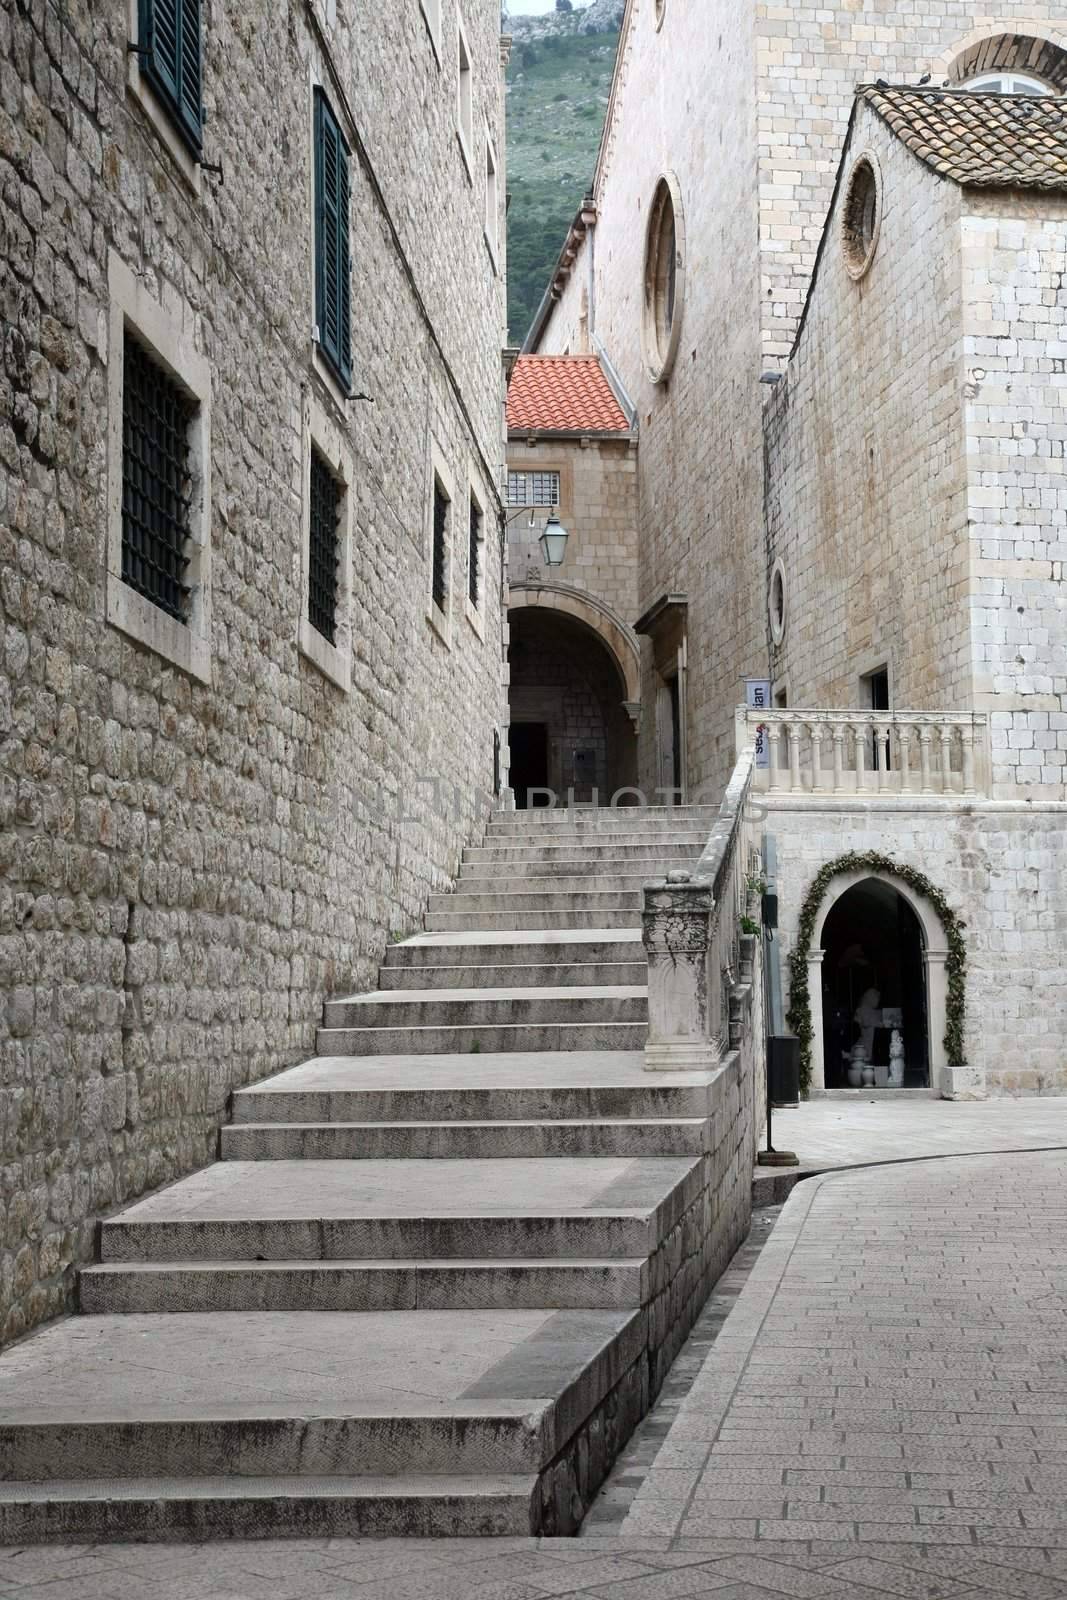 Old town of Dubrovnik, Croatia by atlas